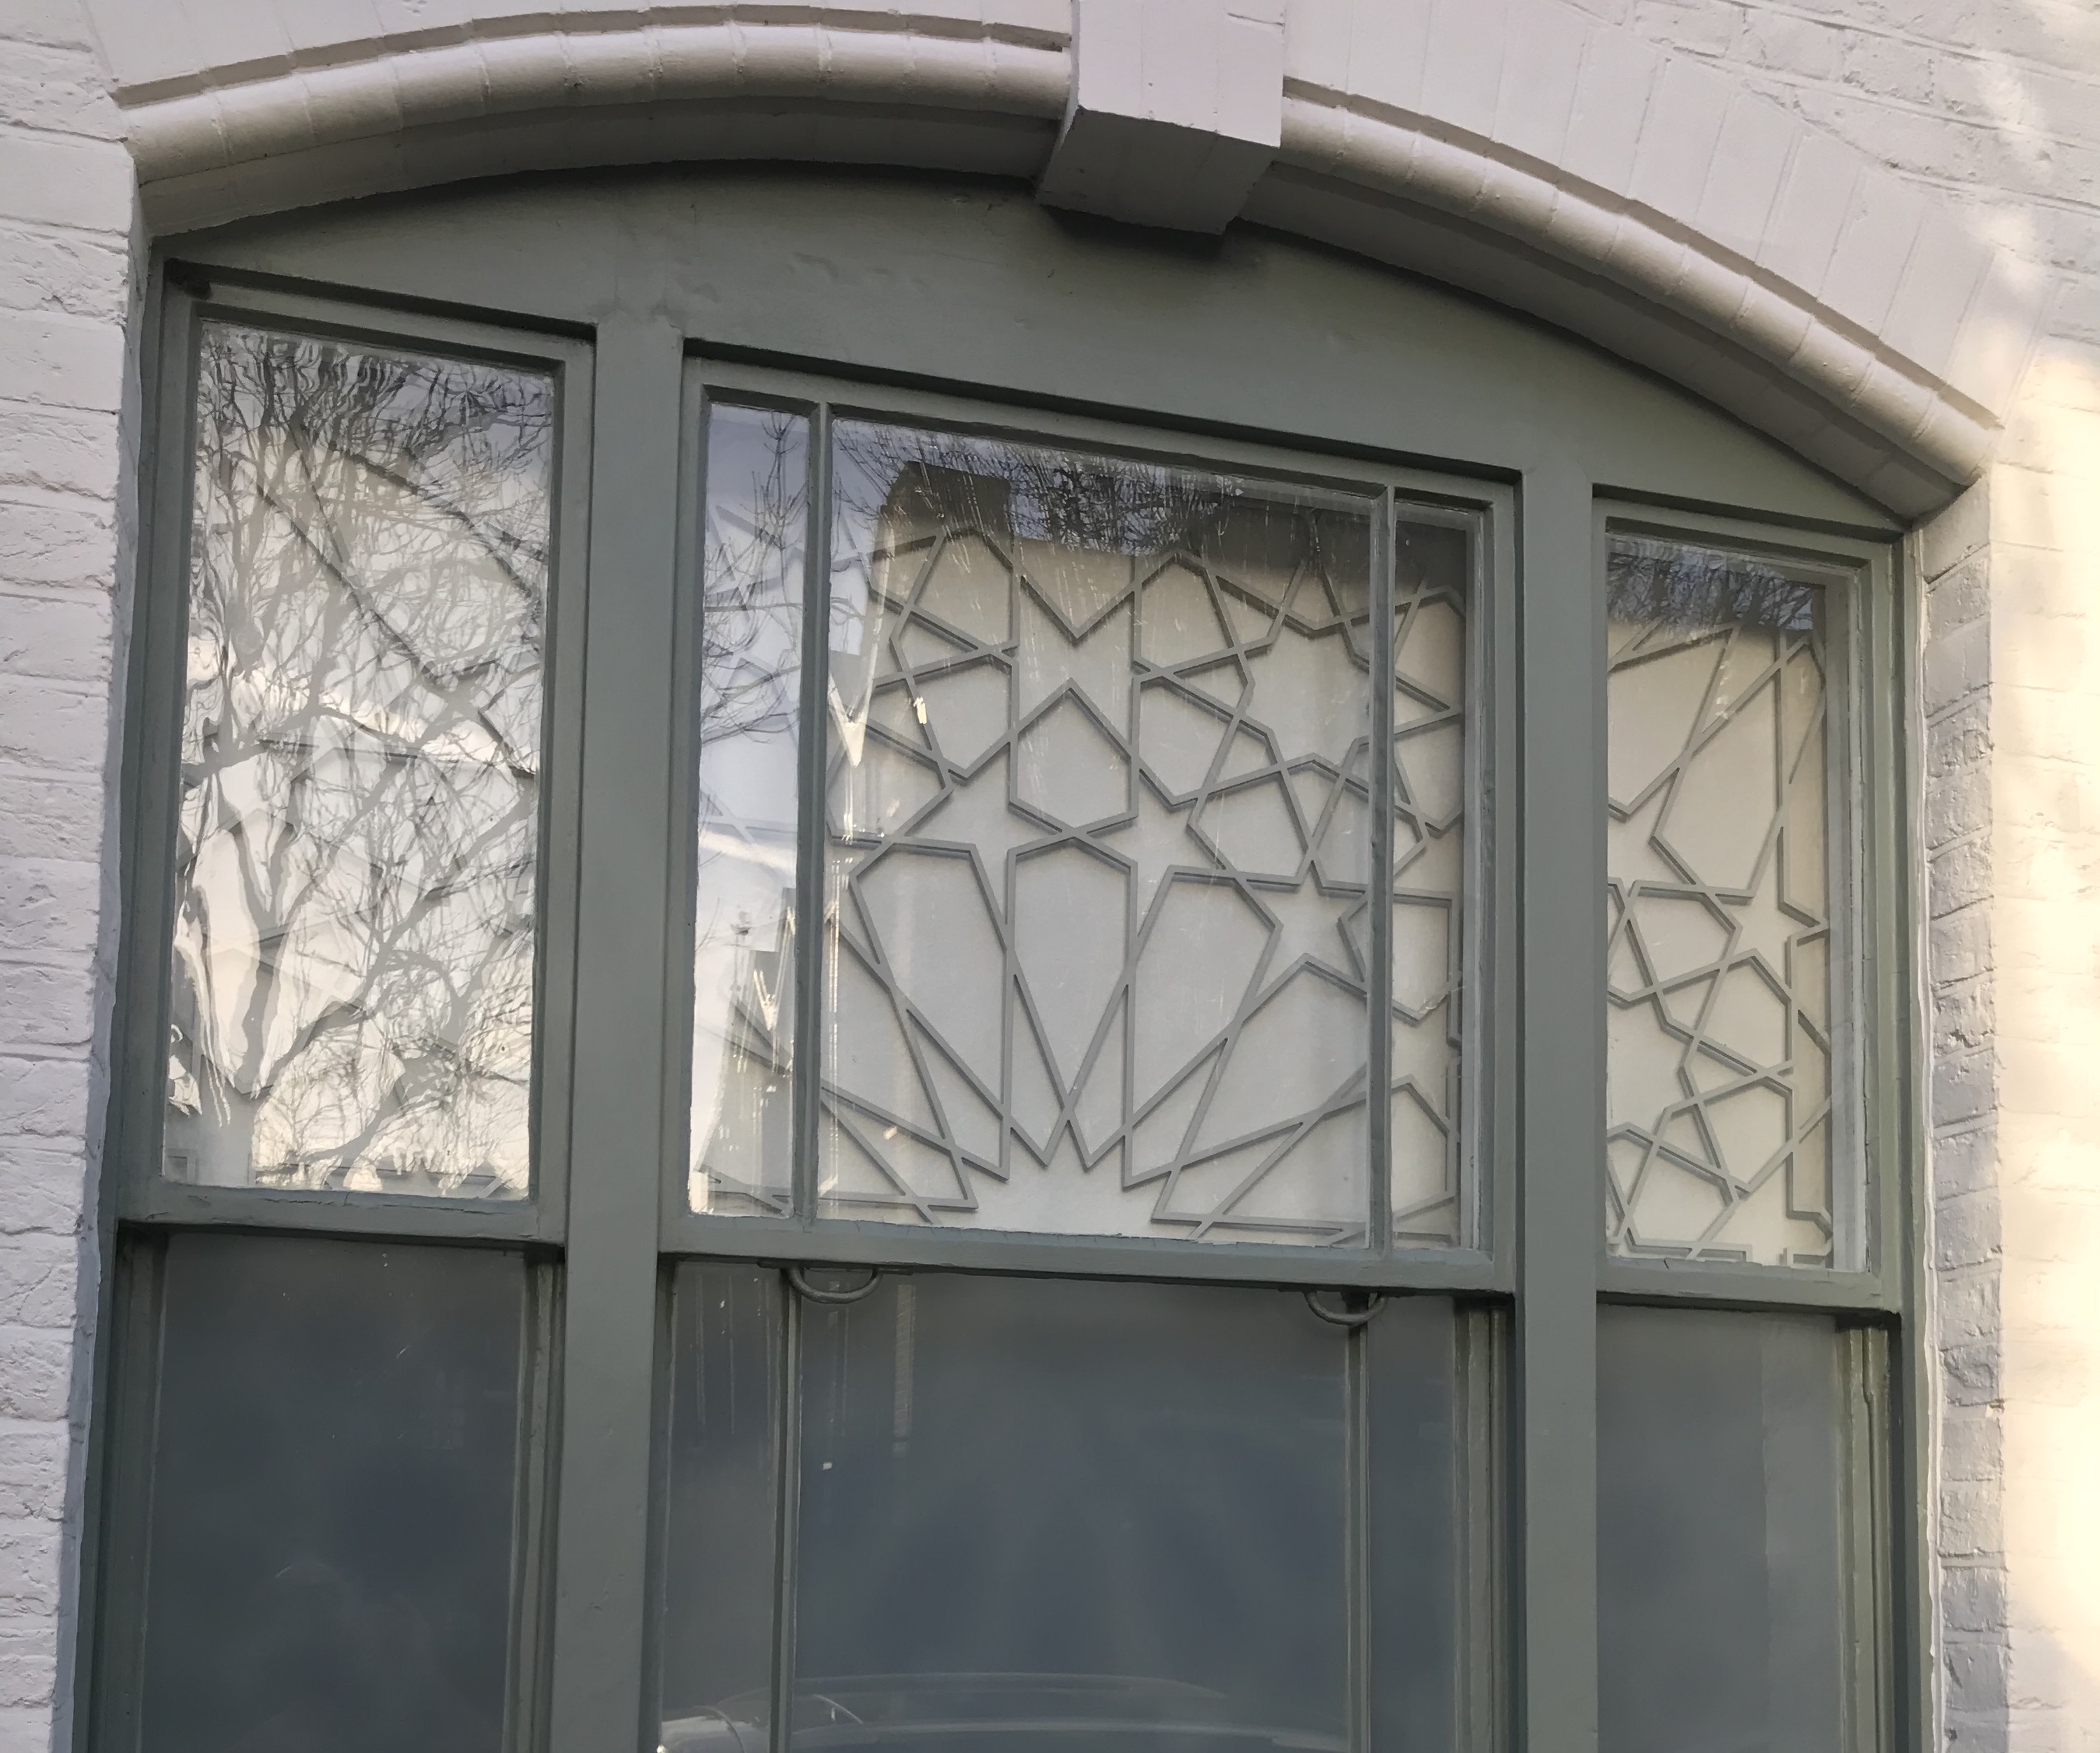 Islamic geometric metal screens in Camden, London